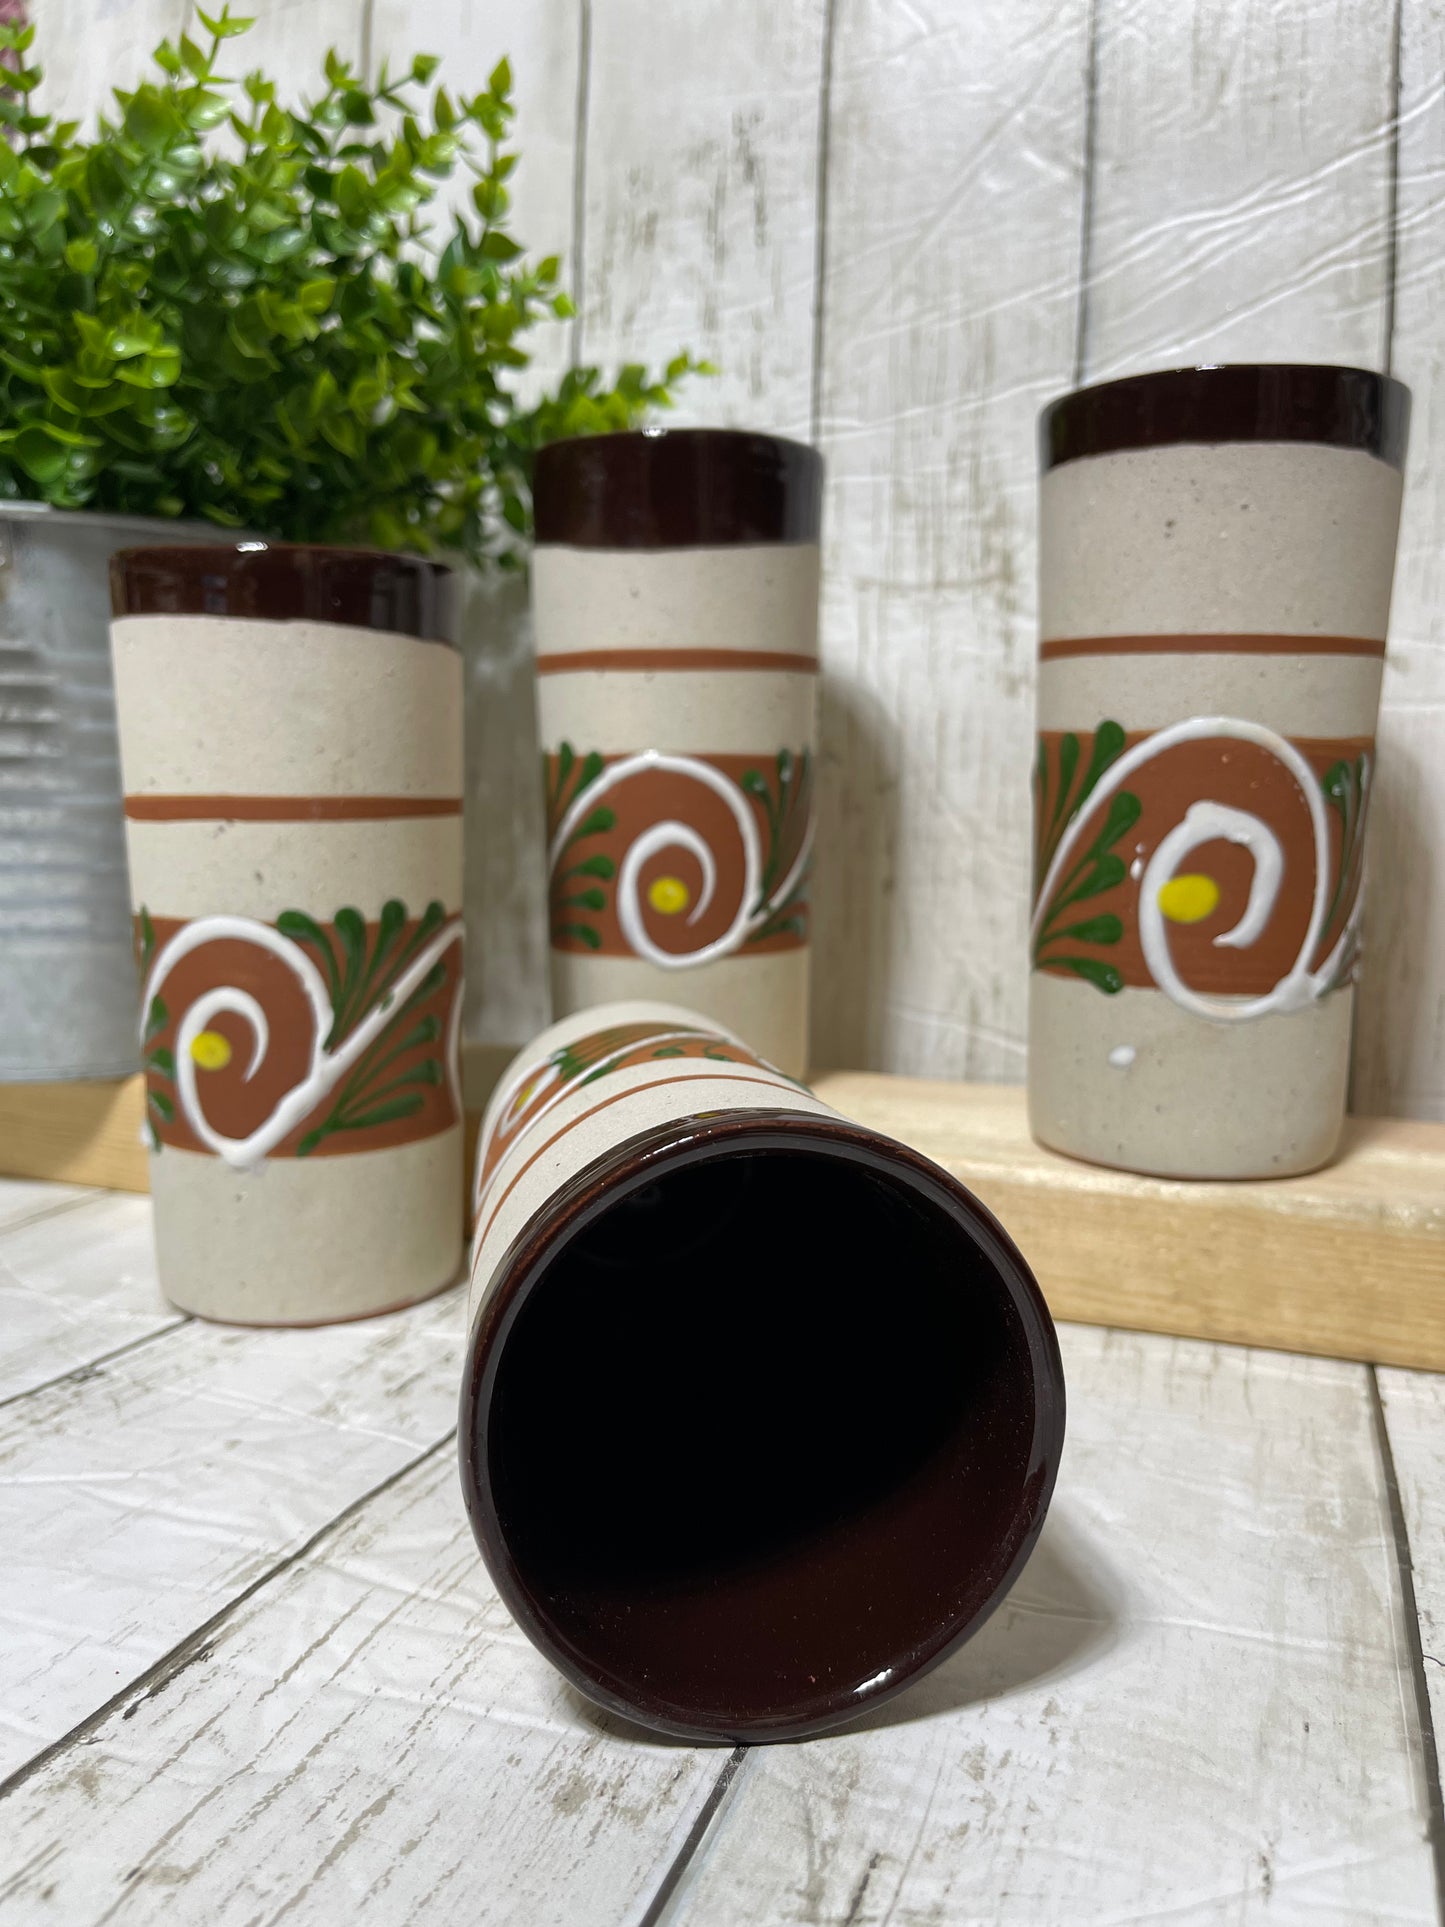 Jaibolero de barro/vasos altos/ceramic clay tumblers engobe asst colors